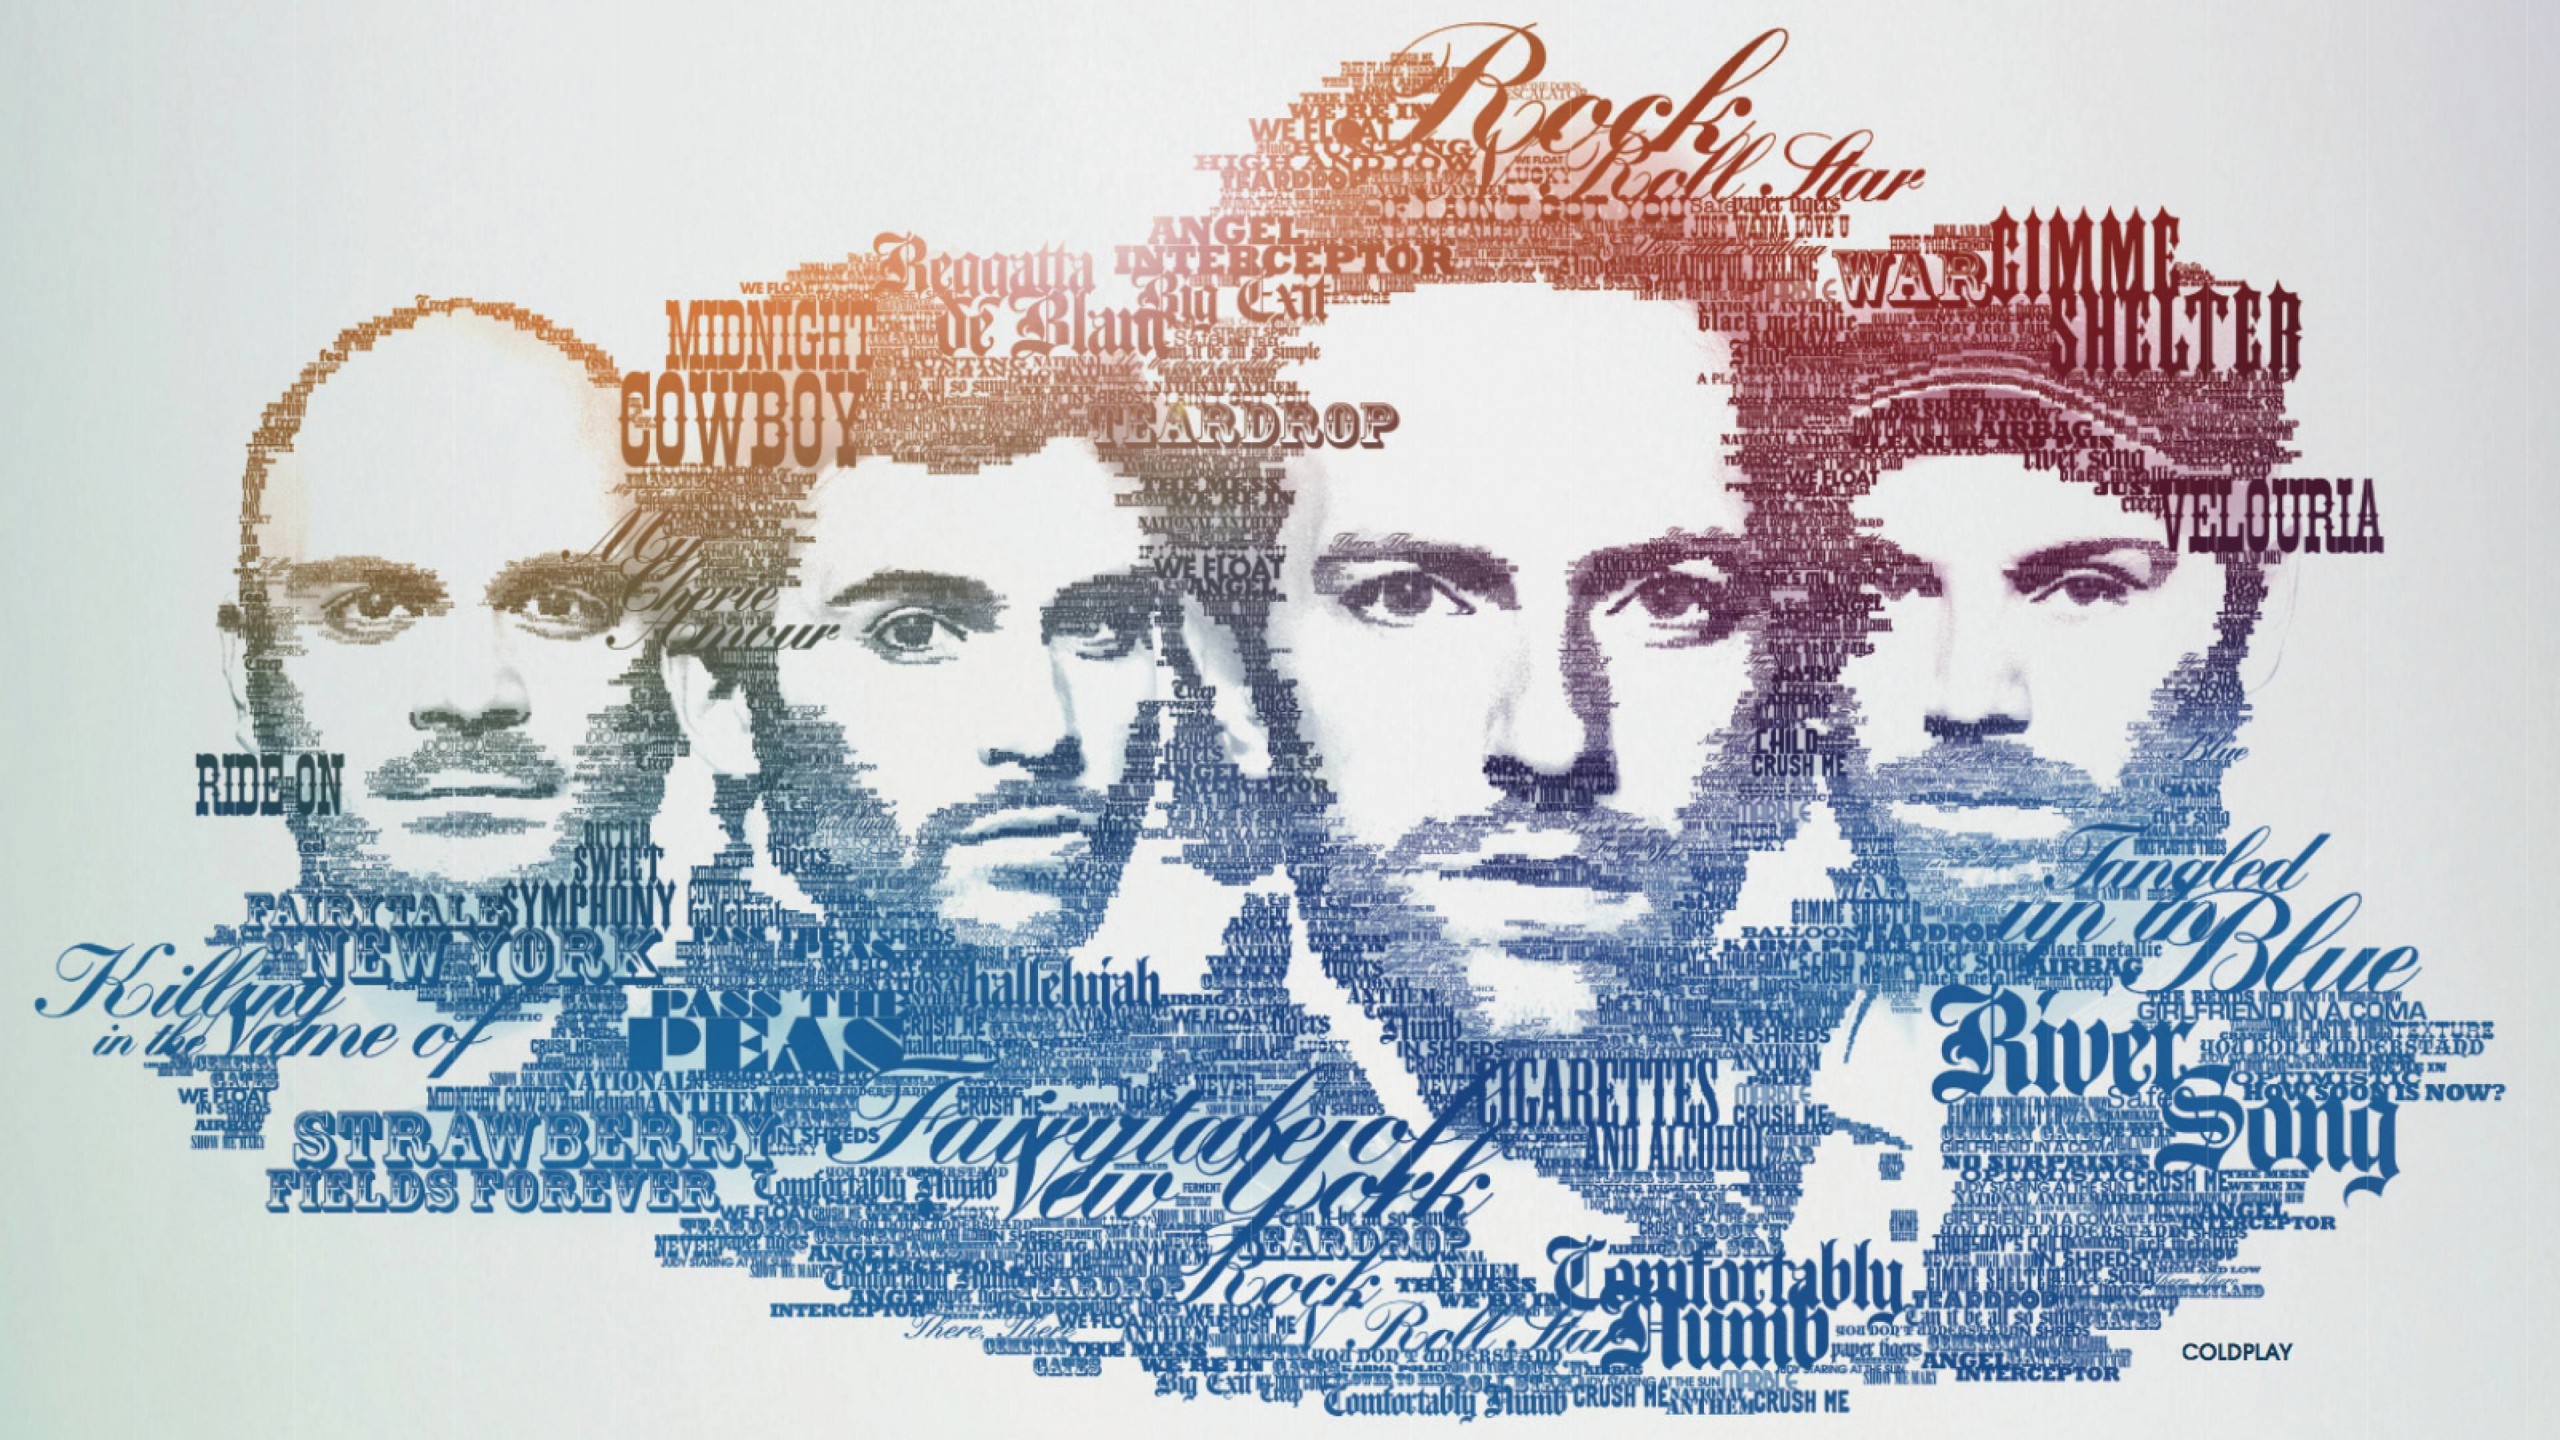 Coldplay Typographic Portrait Wallpaper for Desktop 2560x1440